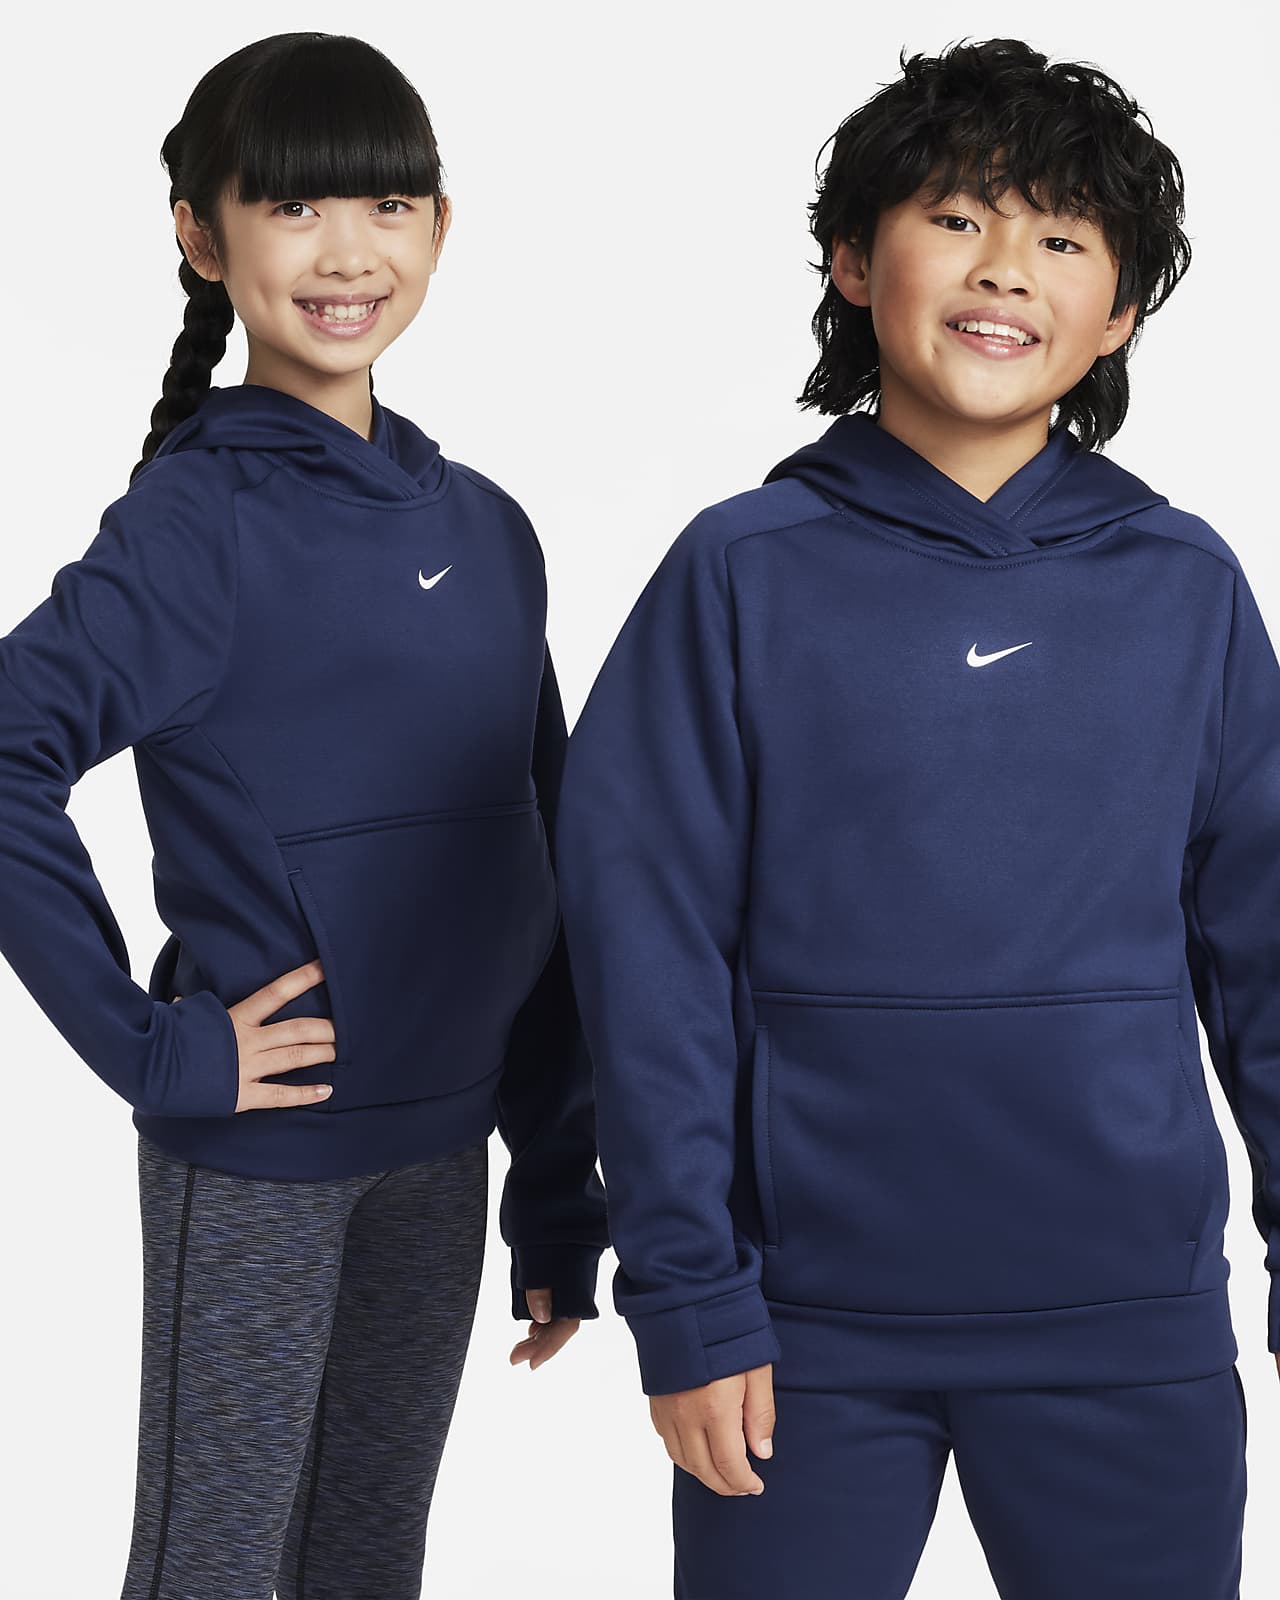 Rond en rond kooi Begunstigde Nike Multi Big Kids' Therma-FIT Pullover Training Hoodie. Nike.com